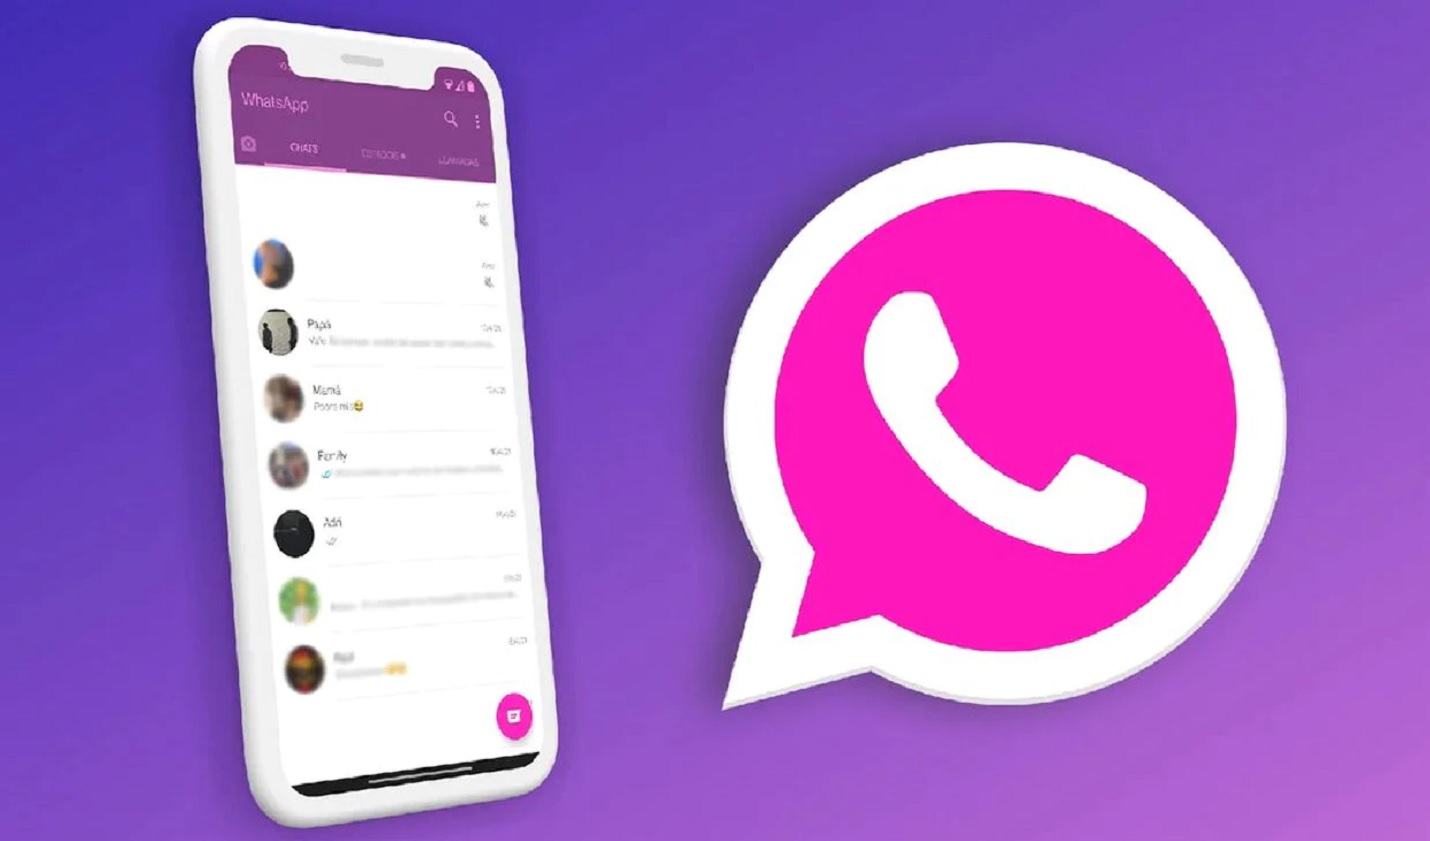 WhatsApp: Cómo cambiar el color del ícono por San Valentín - La Razón